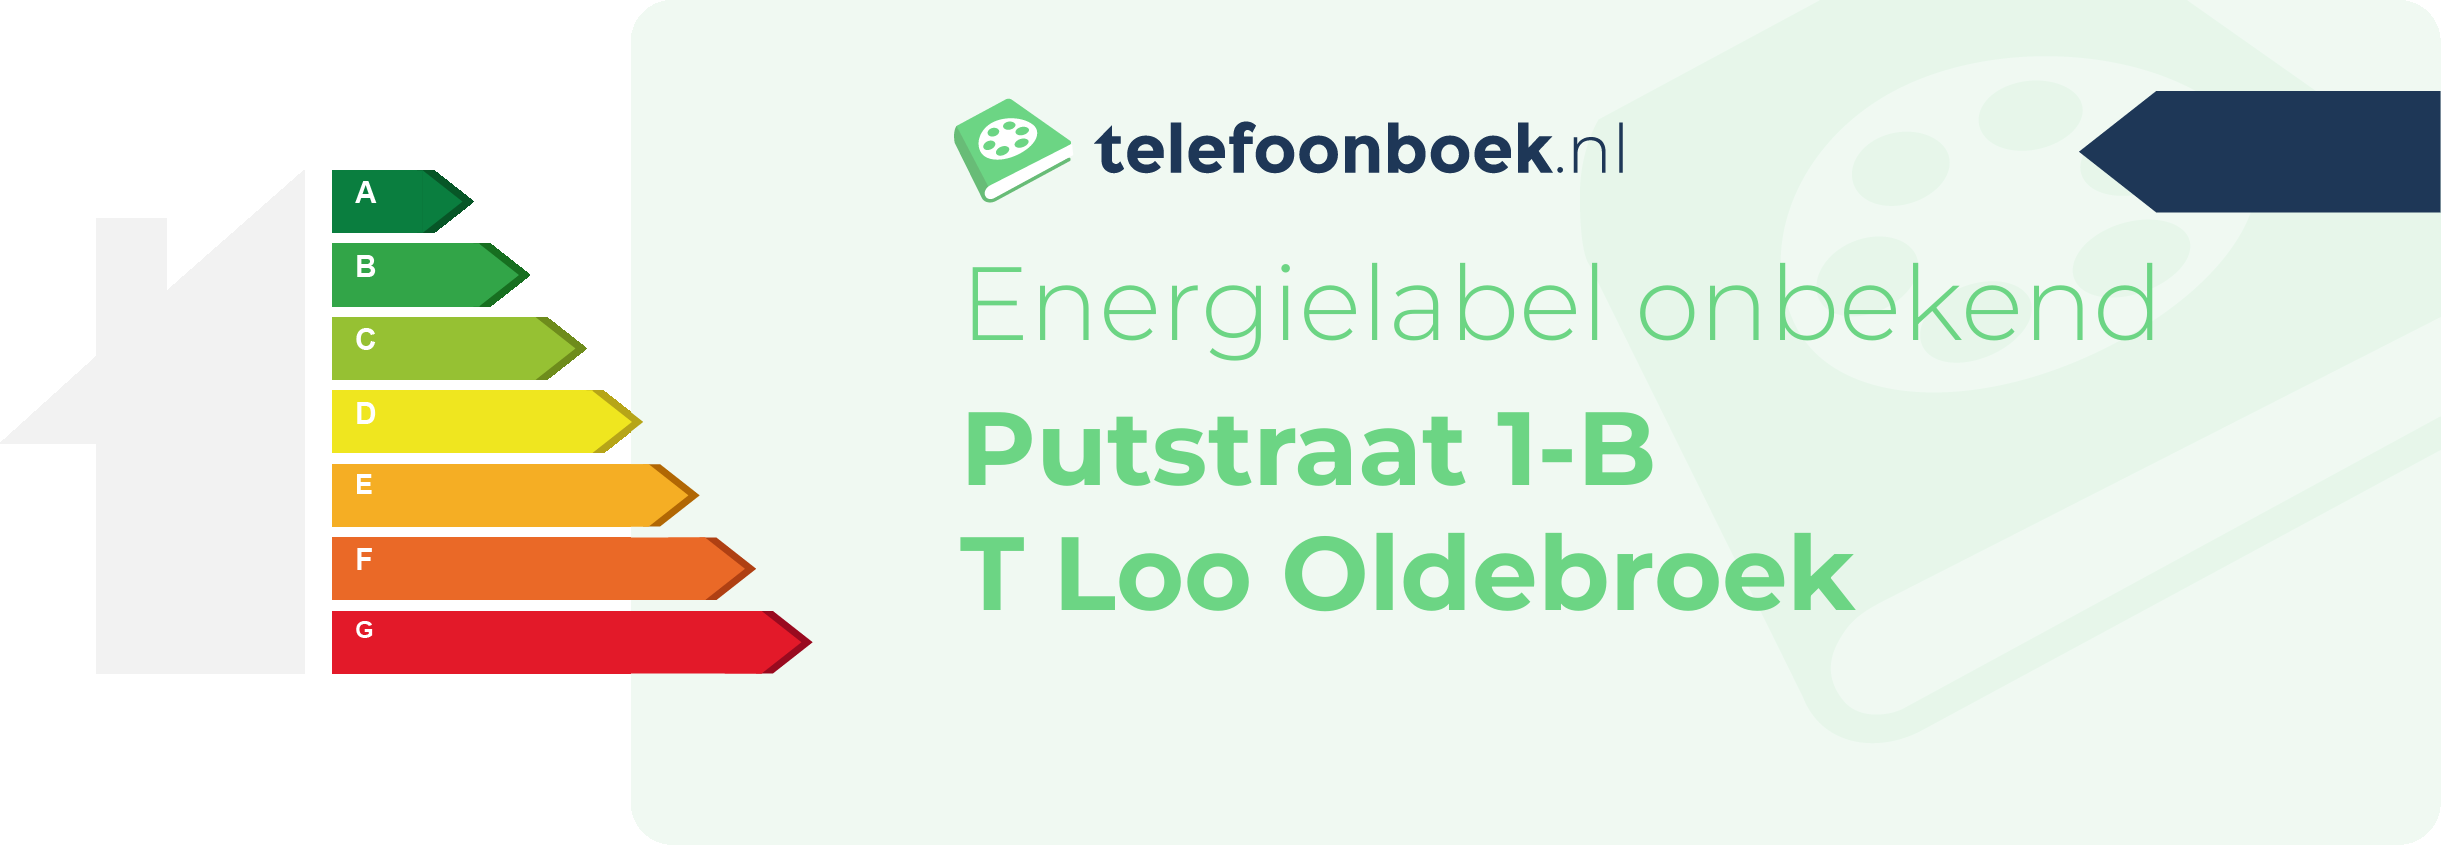 Energielabel Putstraat 1-B T Loo Oldebroek